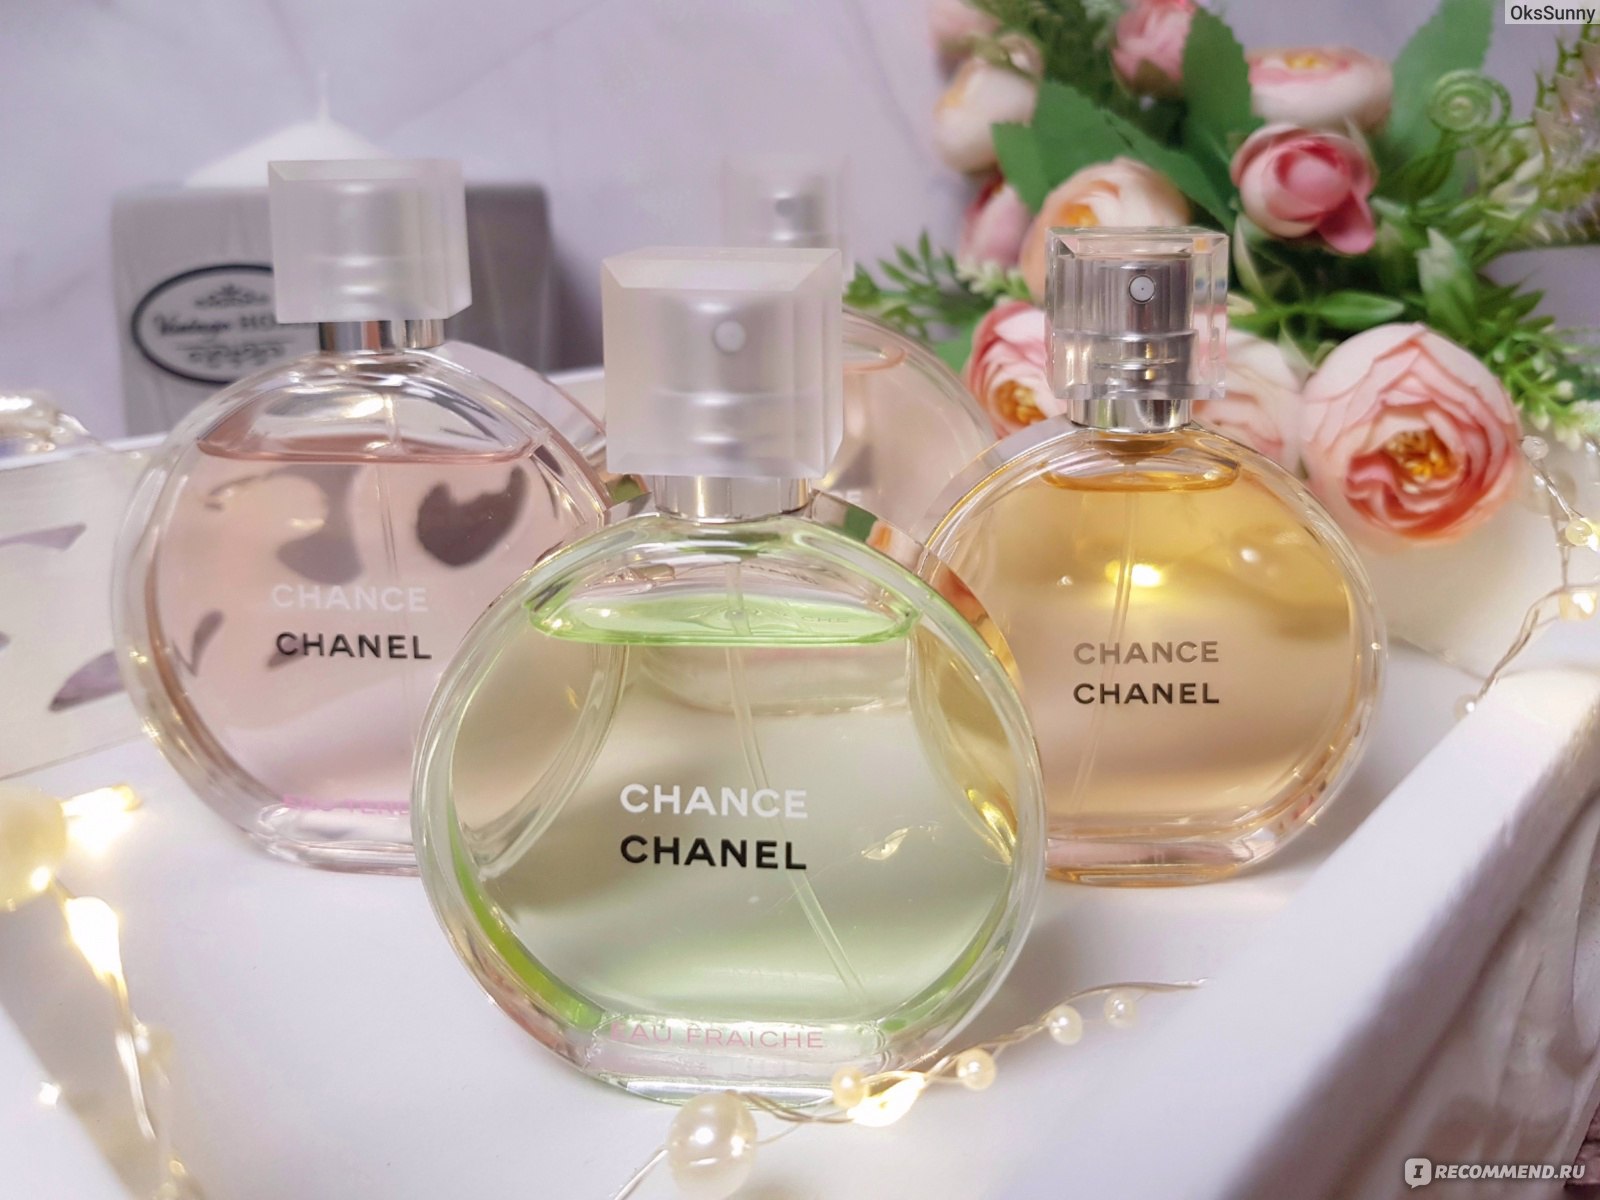 Chanel Chance Eau Fraiche - «Энерджайзер во флаконе⚡⚡ Яркий и бодрящий Chanel  Chance Eau Fraiche → Жизнерадостный и многогранный аромат, способный  скинуть пару лет. »